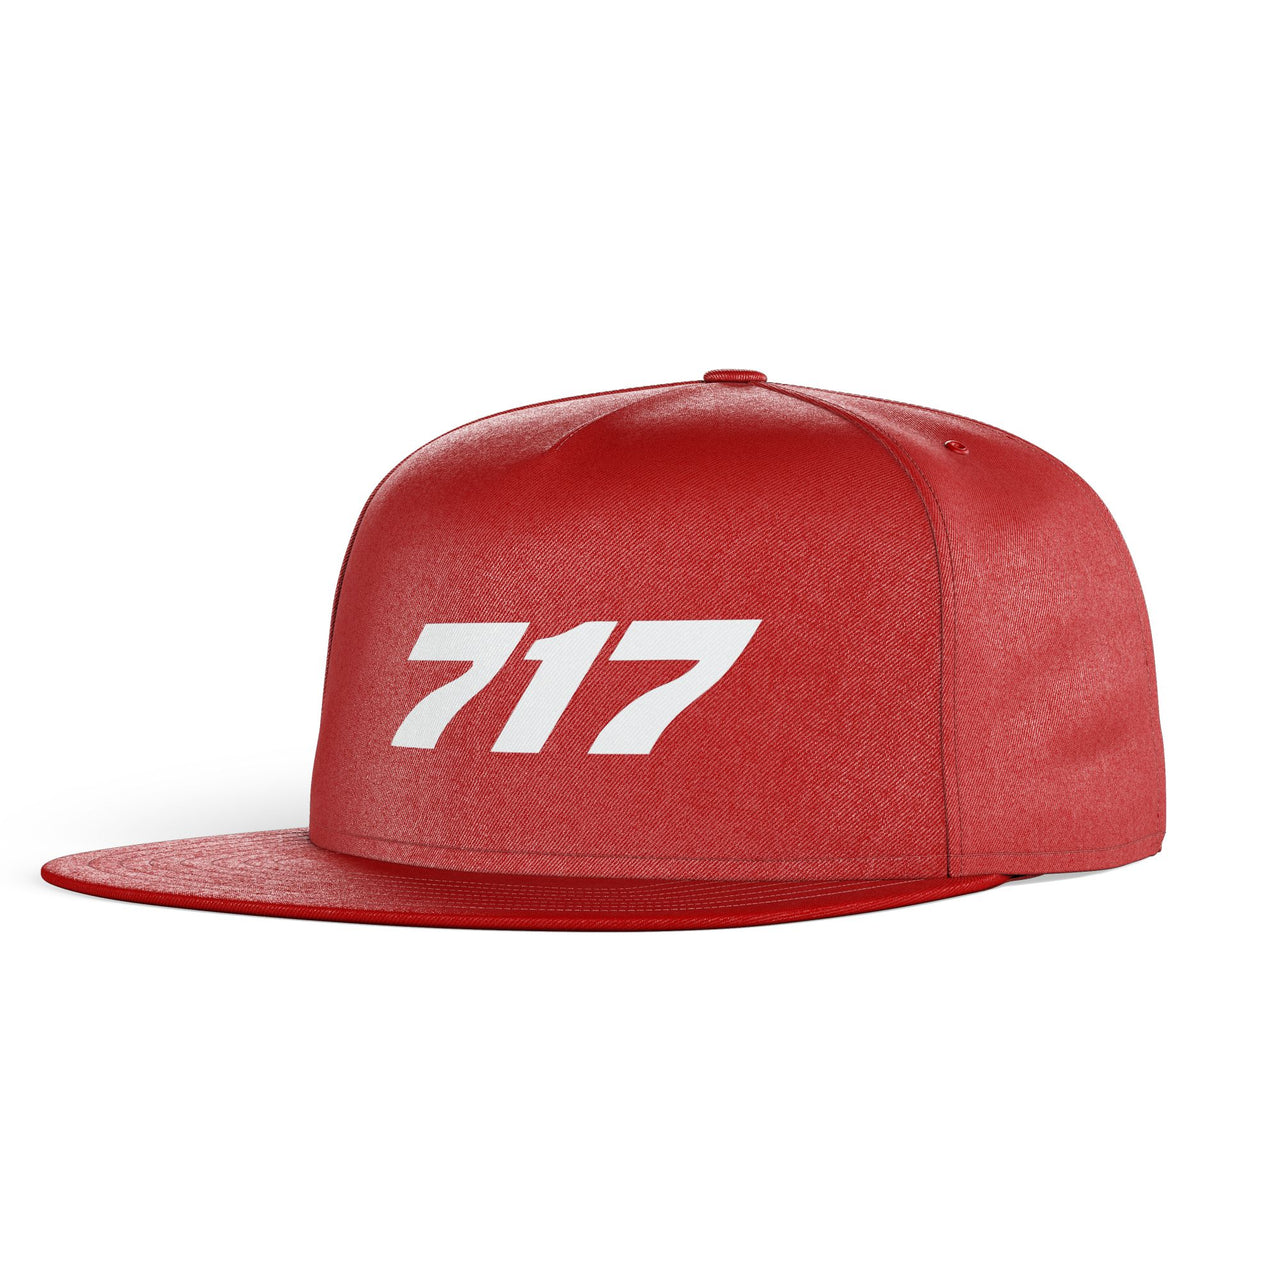 717 Flat Text Designed Snapback Caps & Hats